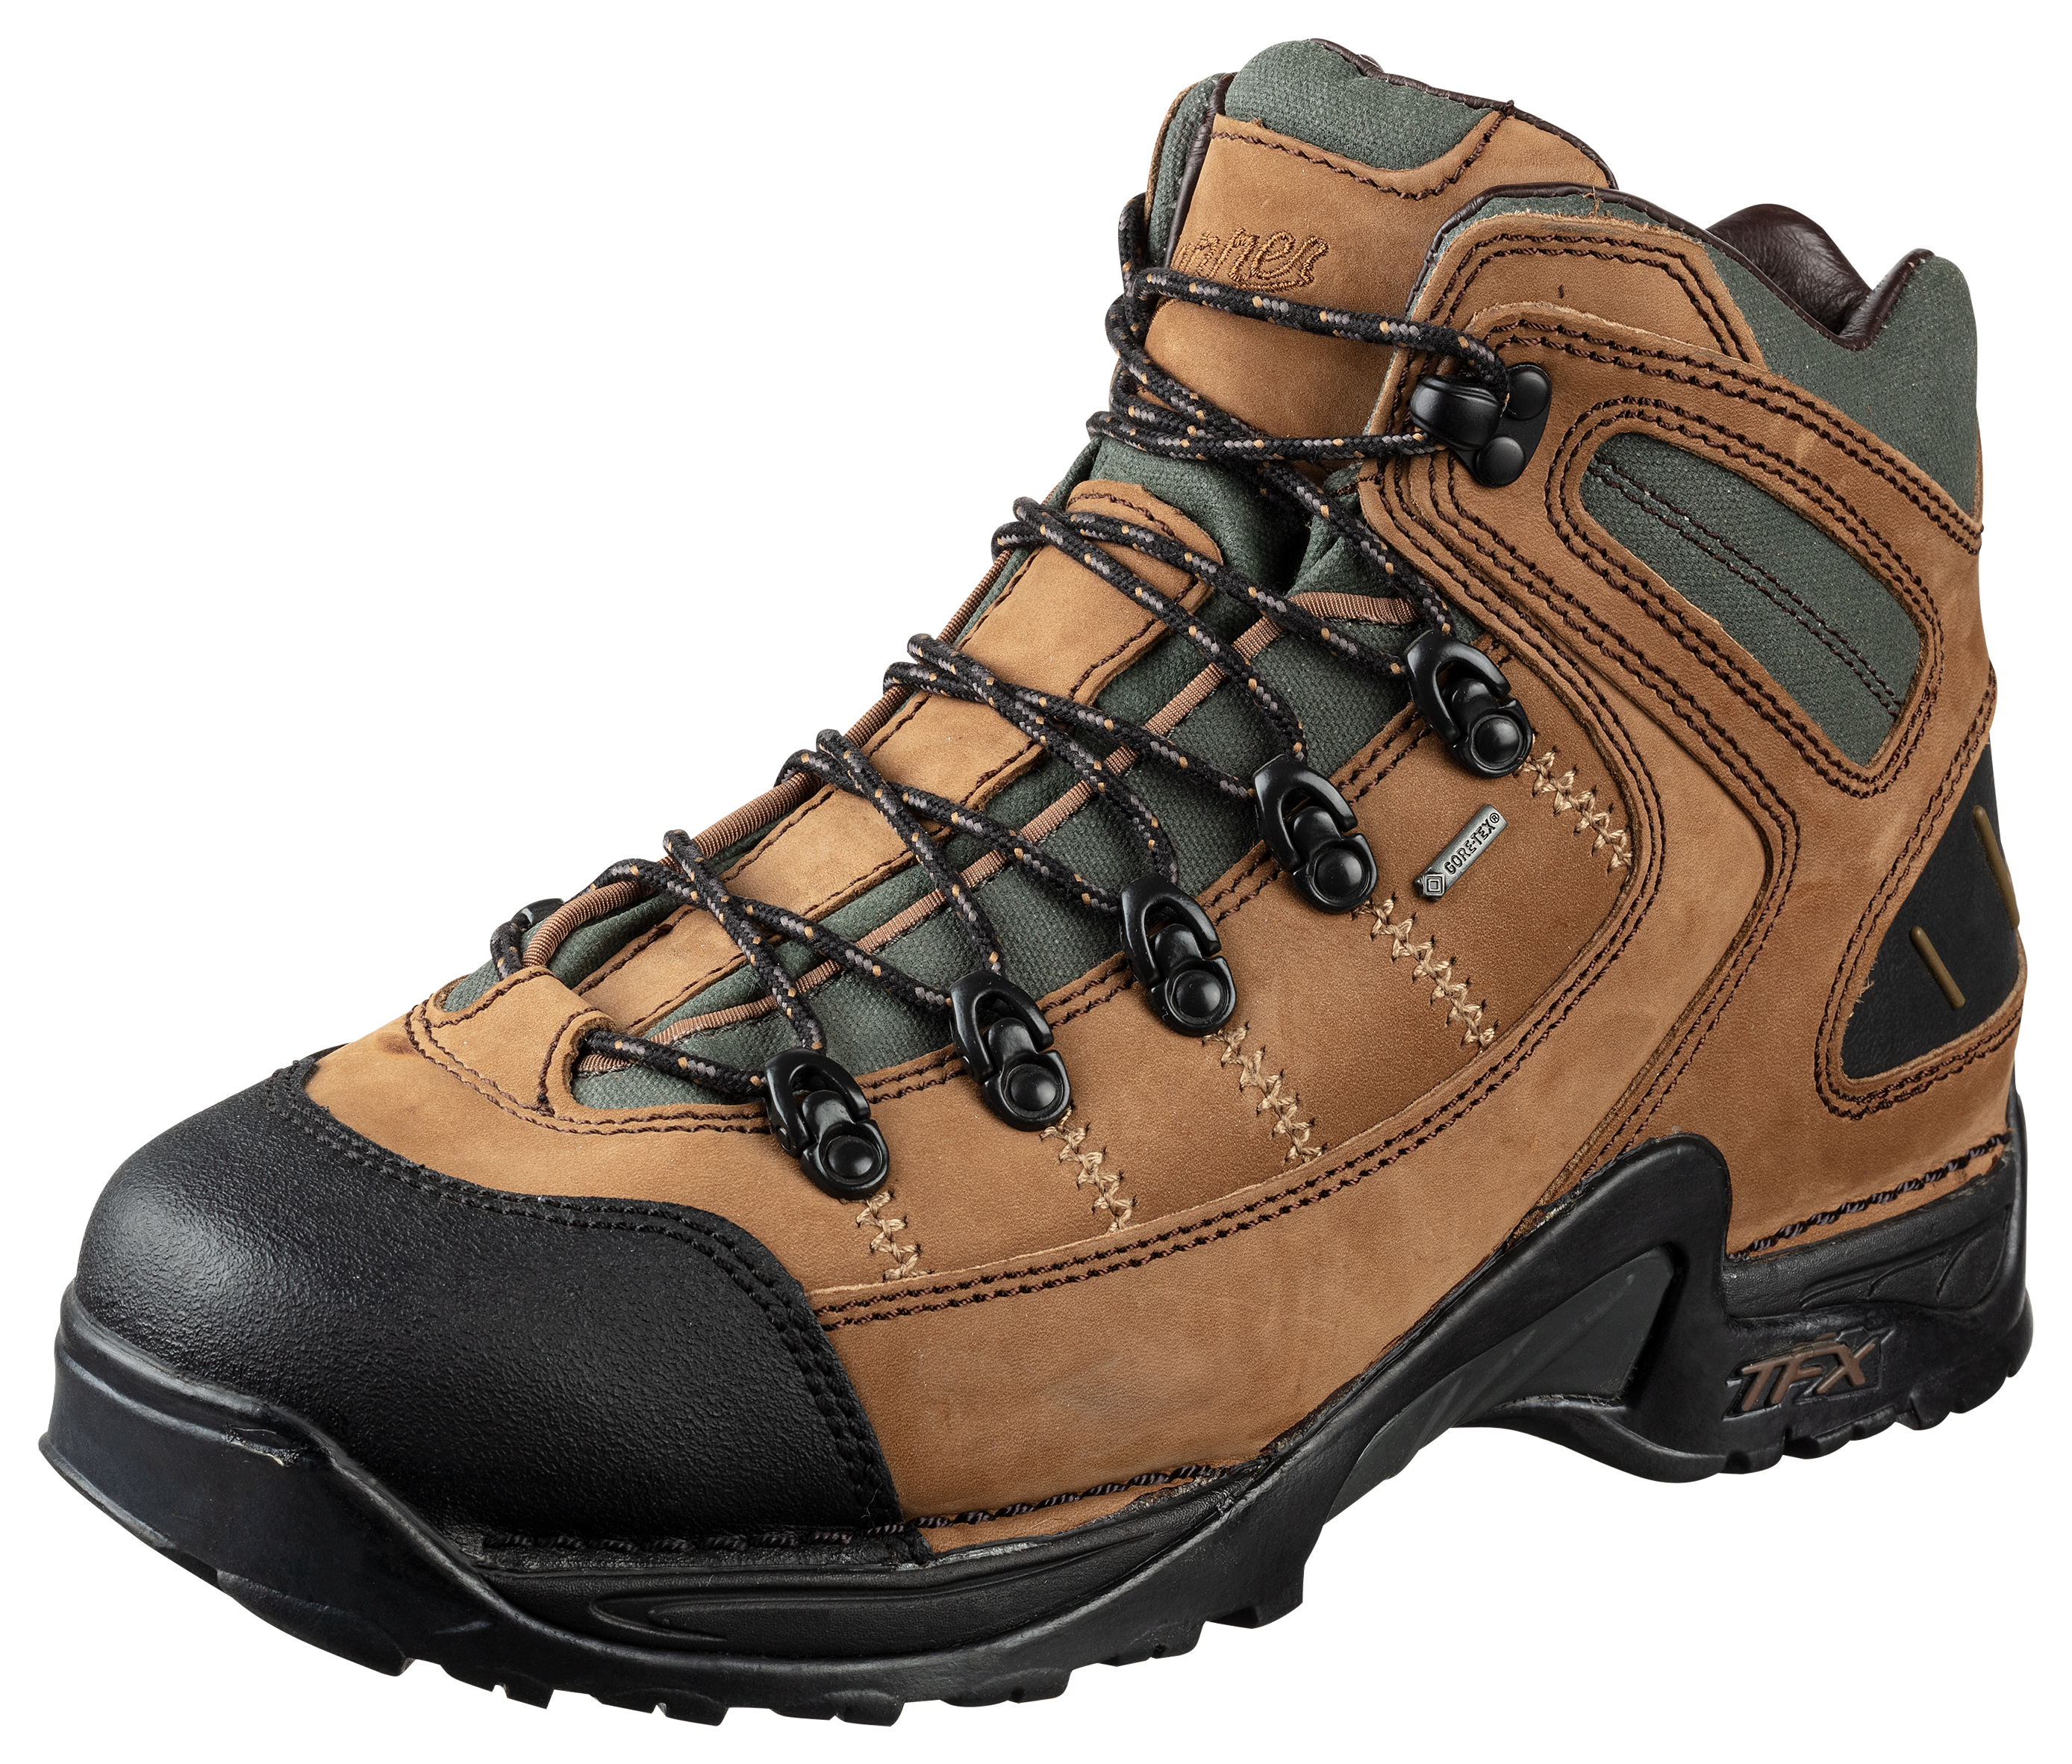 Danner 453 GORE-TEX Waterproof Hiking Boots for Men - Dark Tan - 8.5W